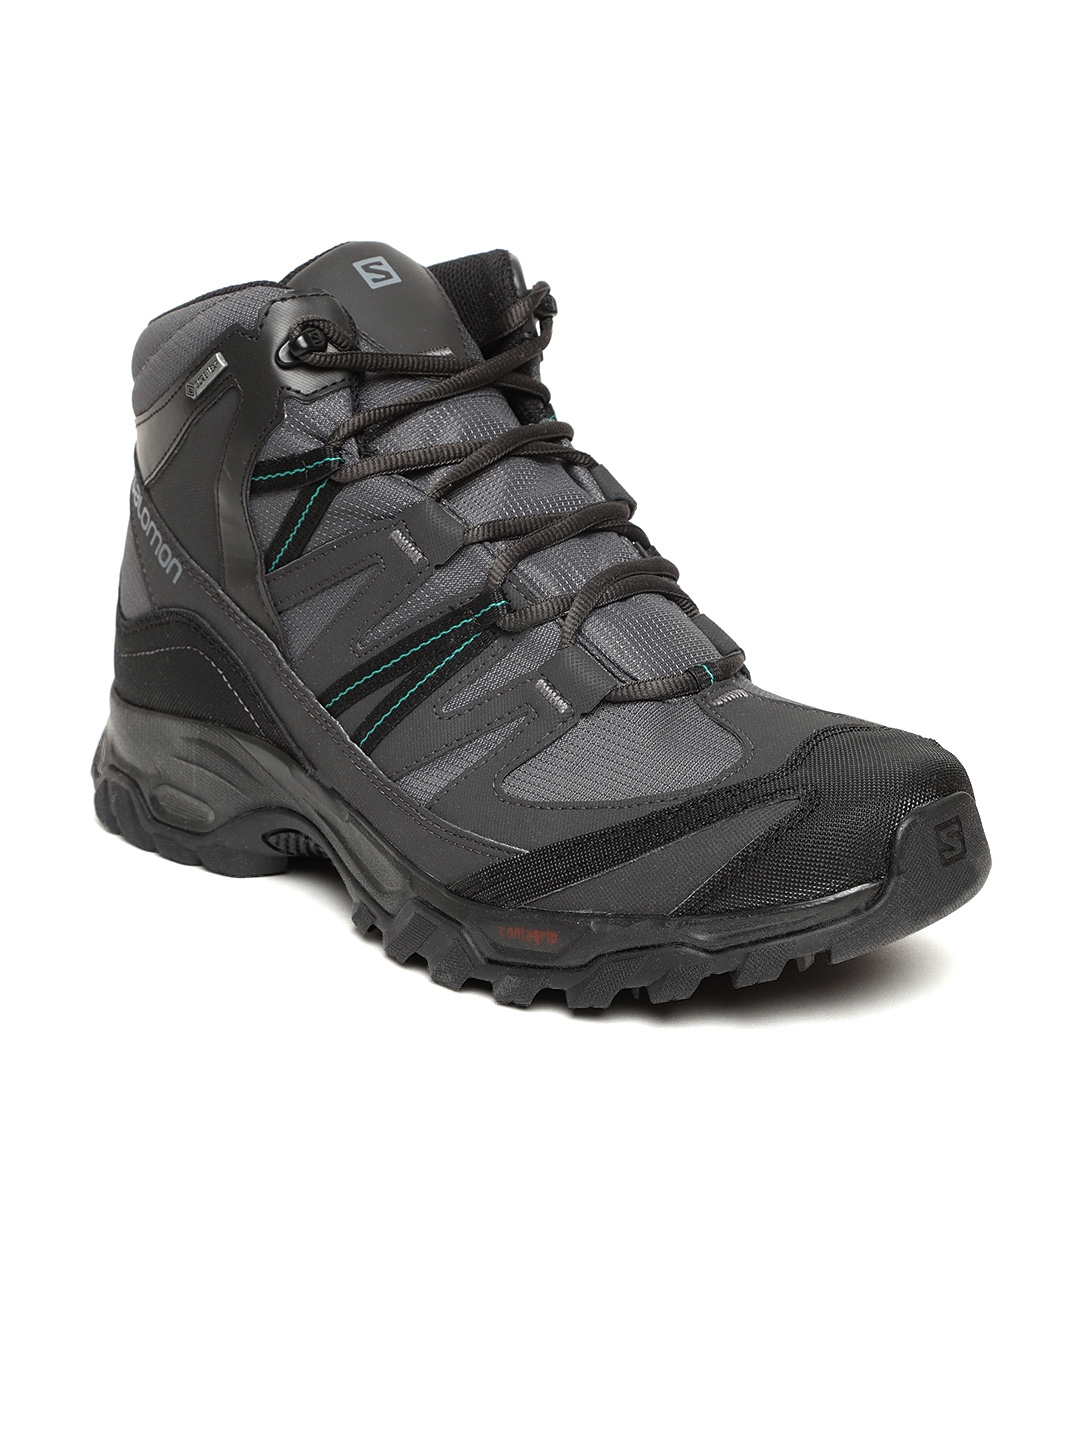 Buy Salomon Men Black Mid GTX Waterproof Shoes - Sports Men 4454801 | Myntra